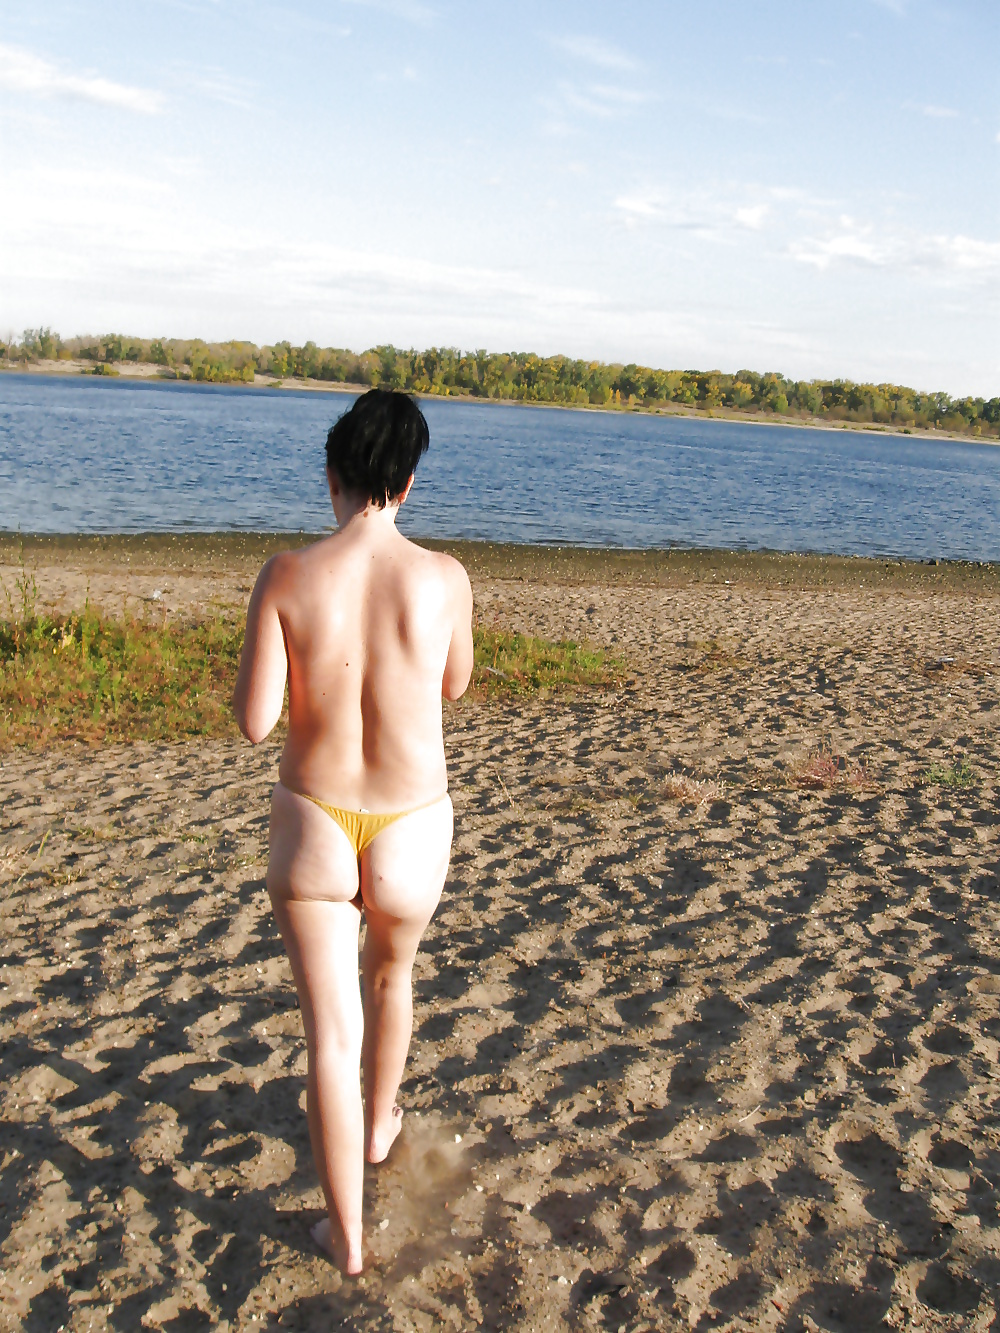 Lili sulla spiaggia in topless con mutandine gialle
 #29389094